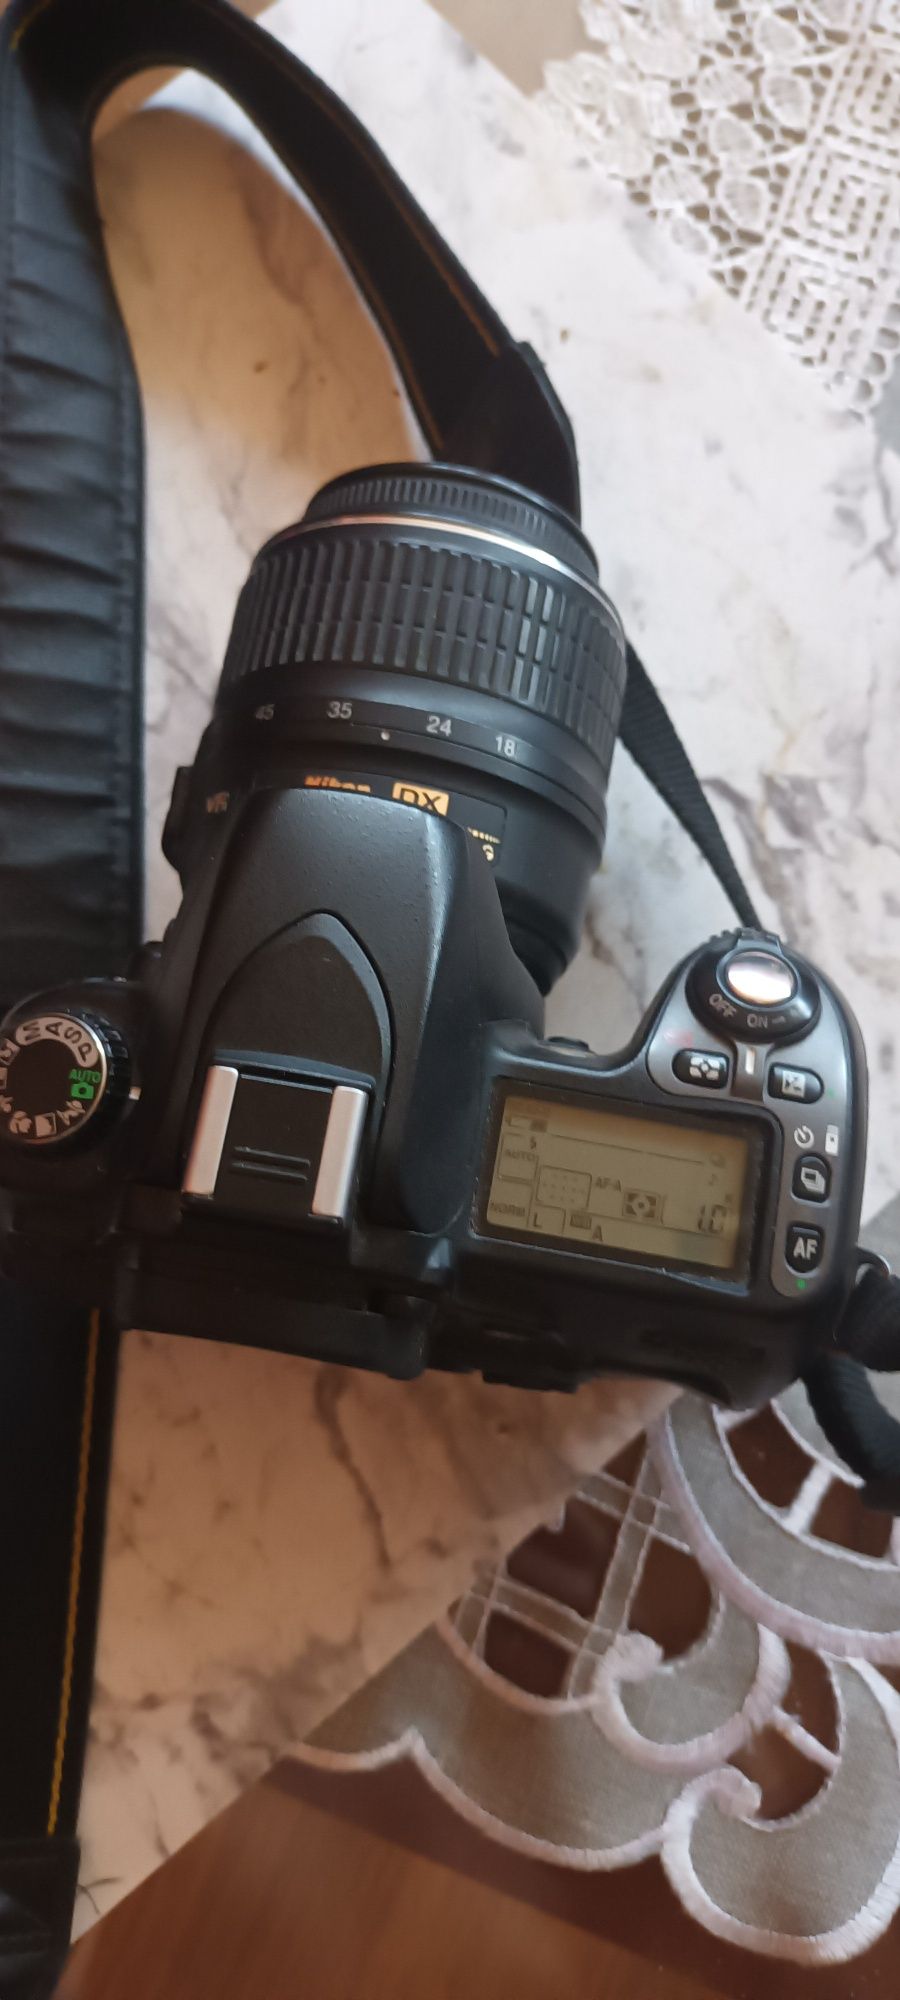 Lustrzanka Nikon d80 i obiektyw Nikor AS-F 18-55 mm 1:3,5-5,6G